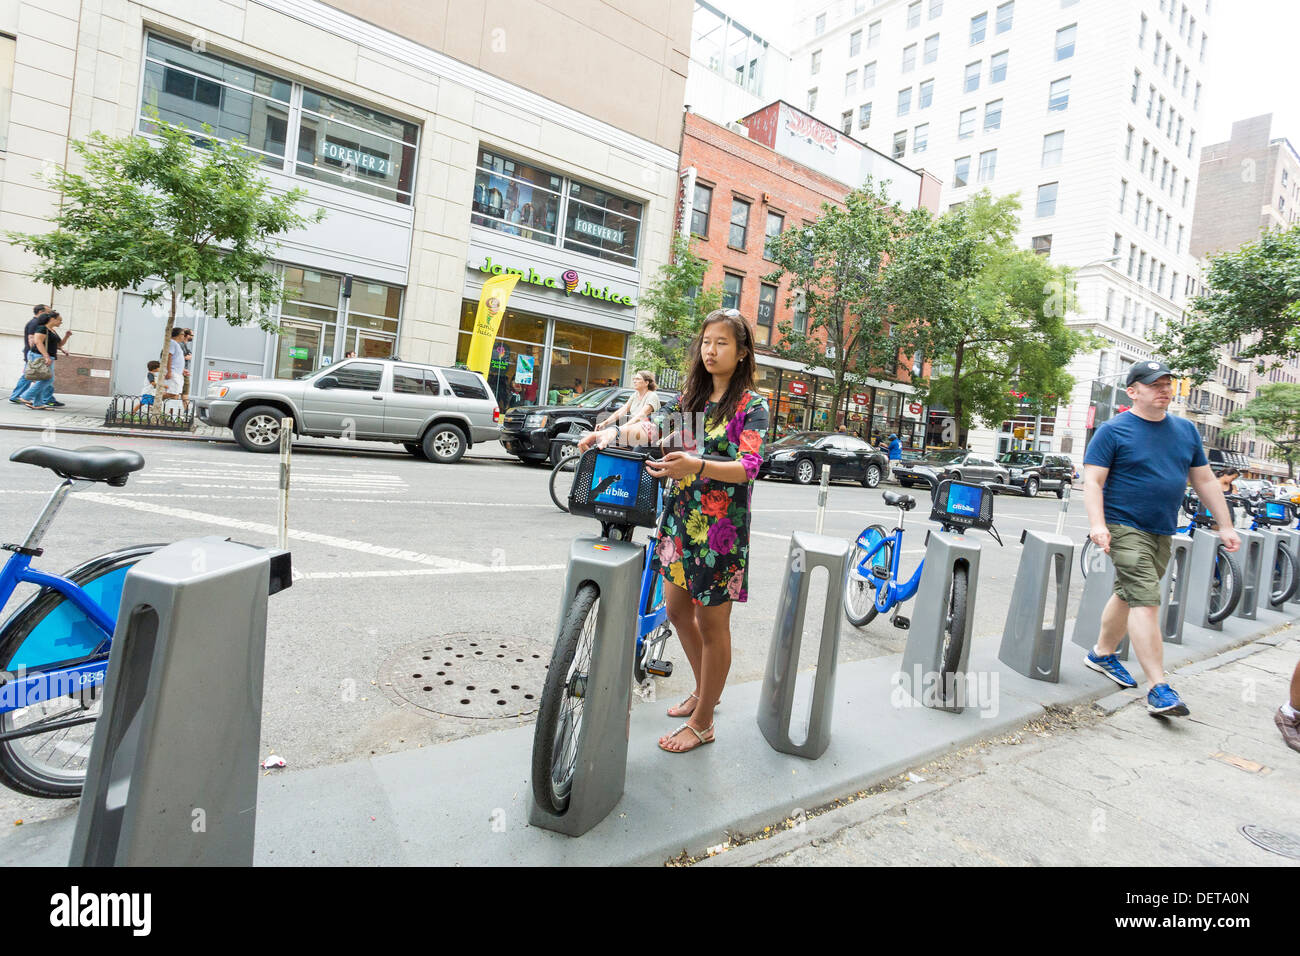 Jeune femme de louer un vélo Citi, système de partage de vélos publics à New York City Banque D'Images